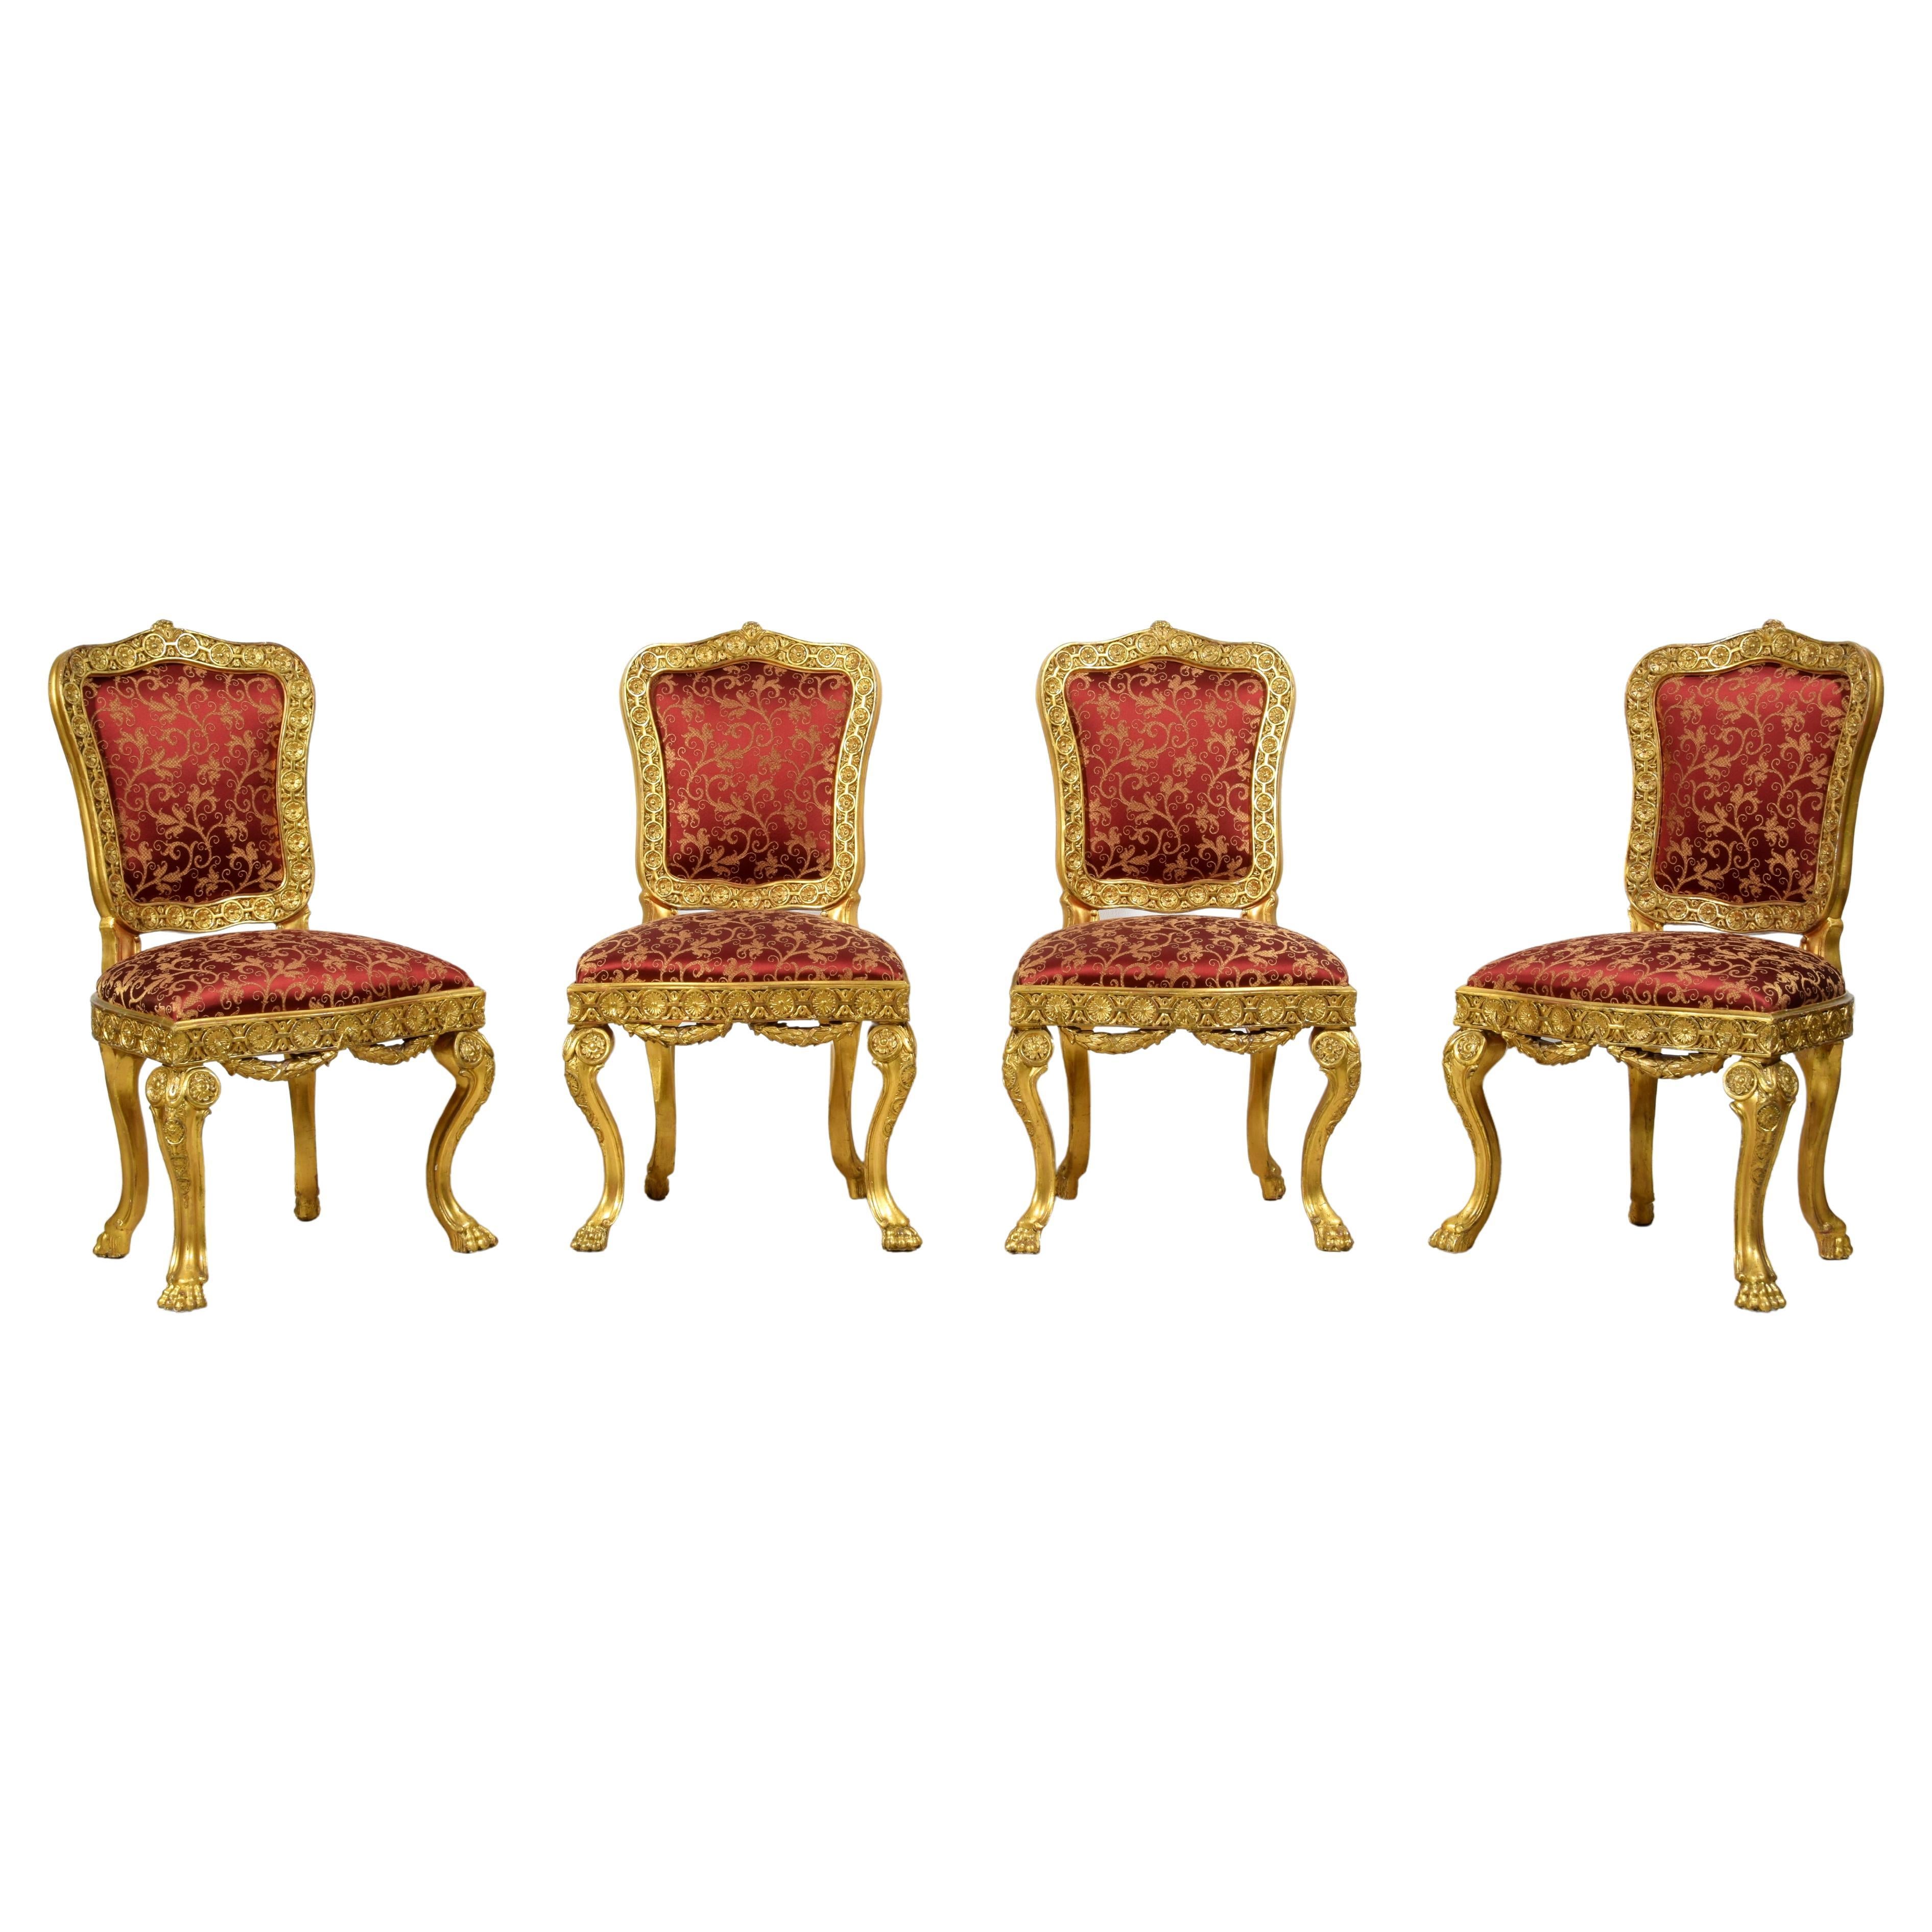 Quatre chaises baroques italiennes en bois doré sculpté du XVIIIe siècle 